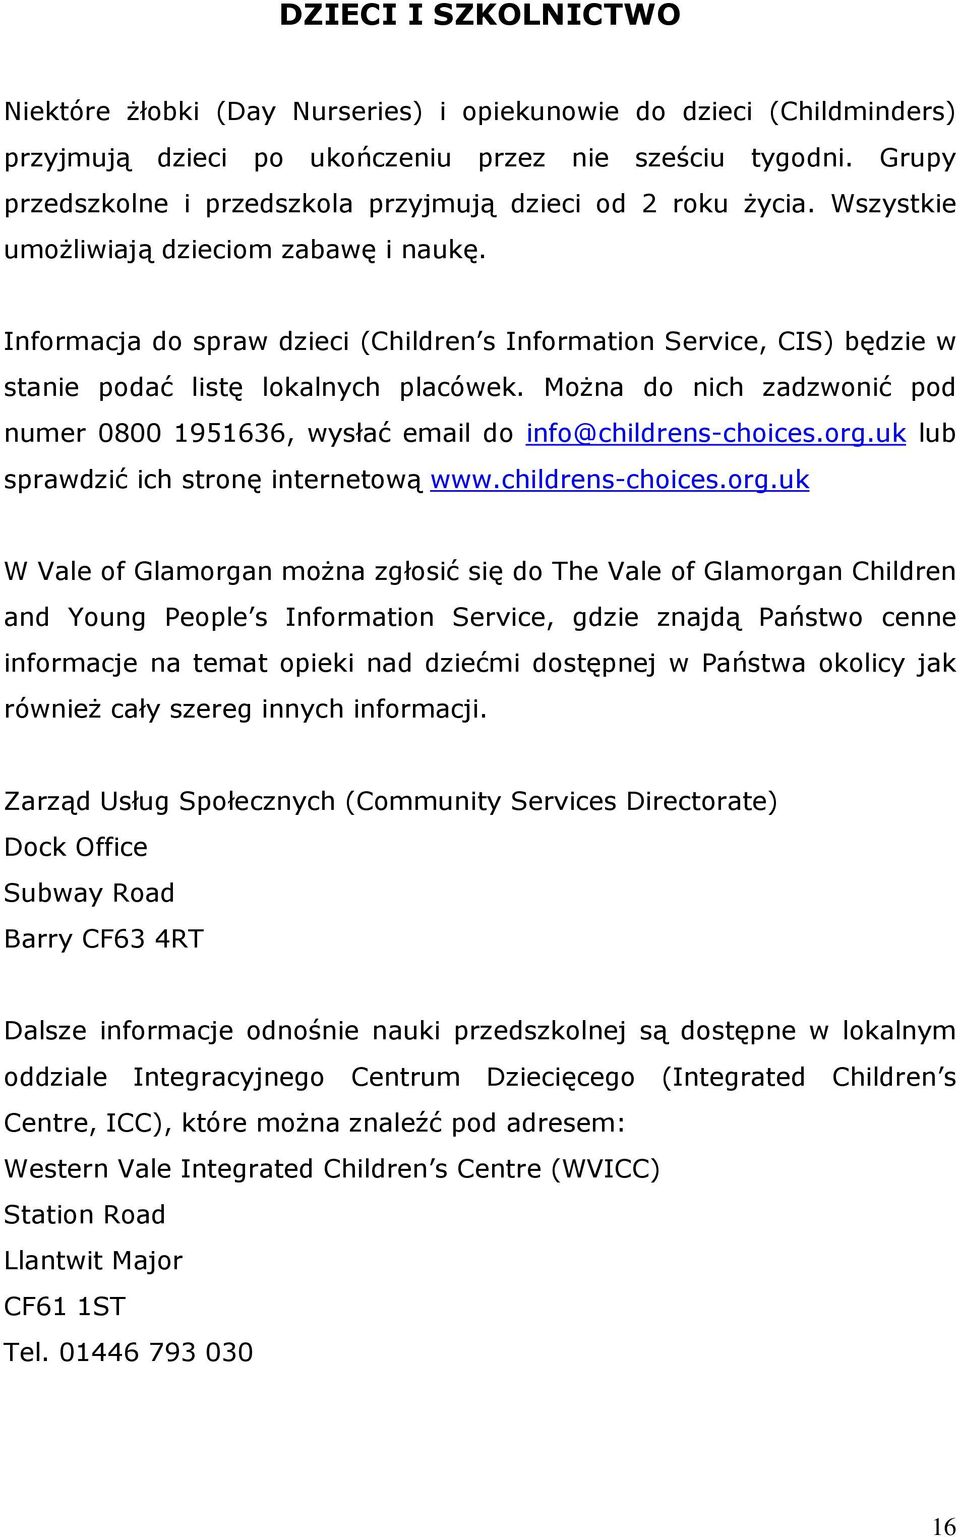 Informacja do spraw dzieci (Children s Information Service, CIS) będzie w stanie podać listę lokalnych placówek. Można do nich zadzwonić pod numer 0800 1951636, wysłać email do info@childrens-choices.